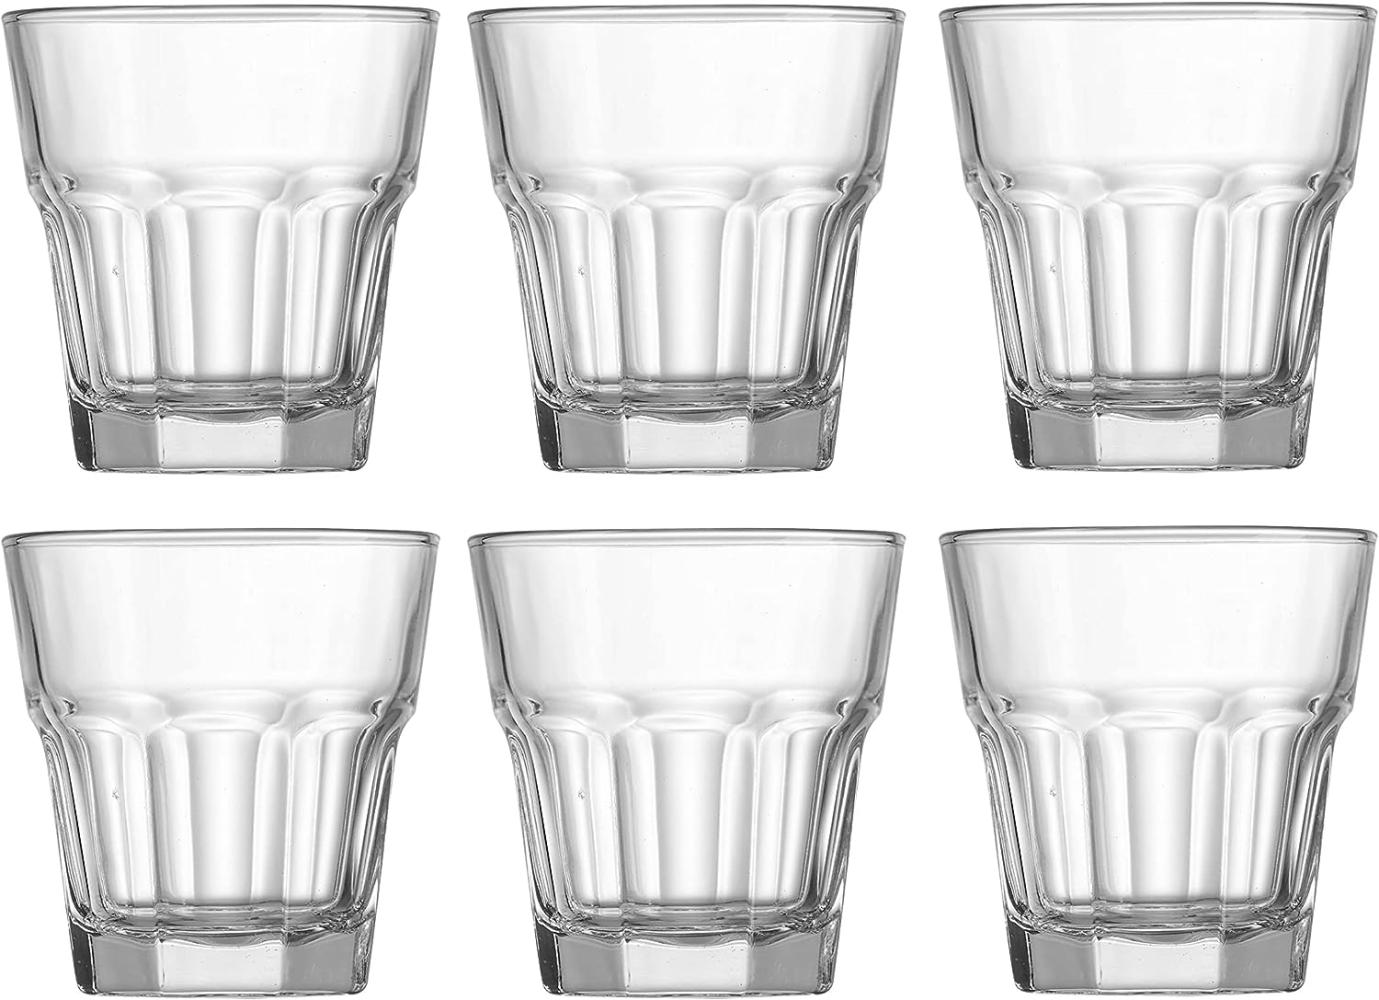 Ritzenhoff & Breker Whiskyglas Riad, Schnapsglas, Becher, Glas, Klar, 140 ml, 812350 Bild 1